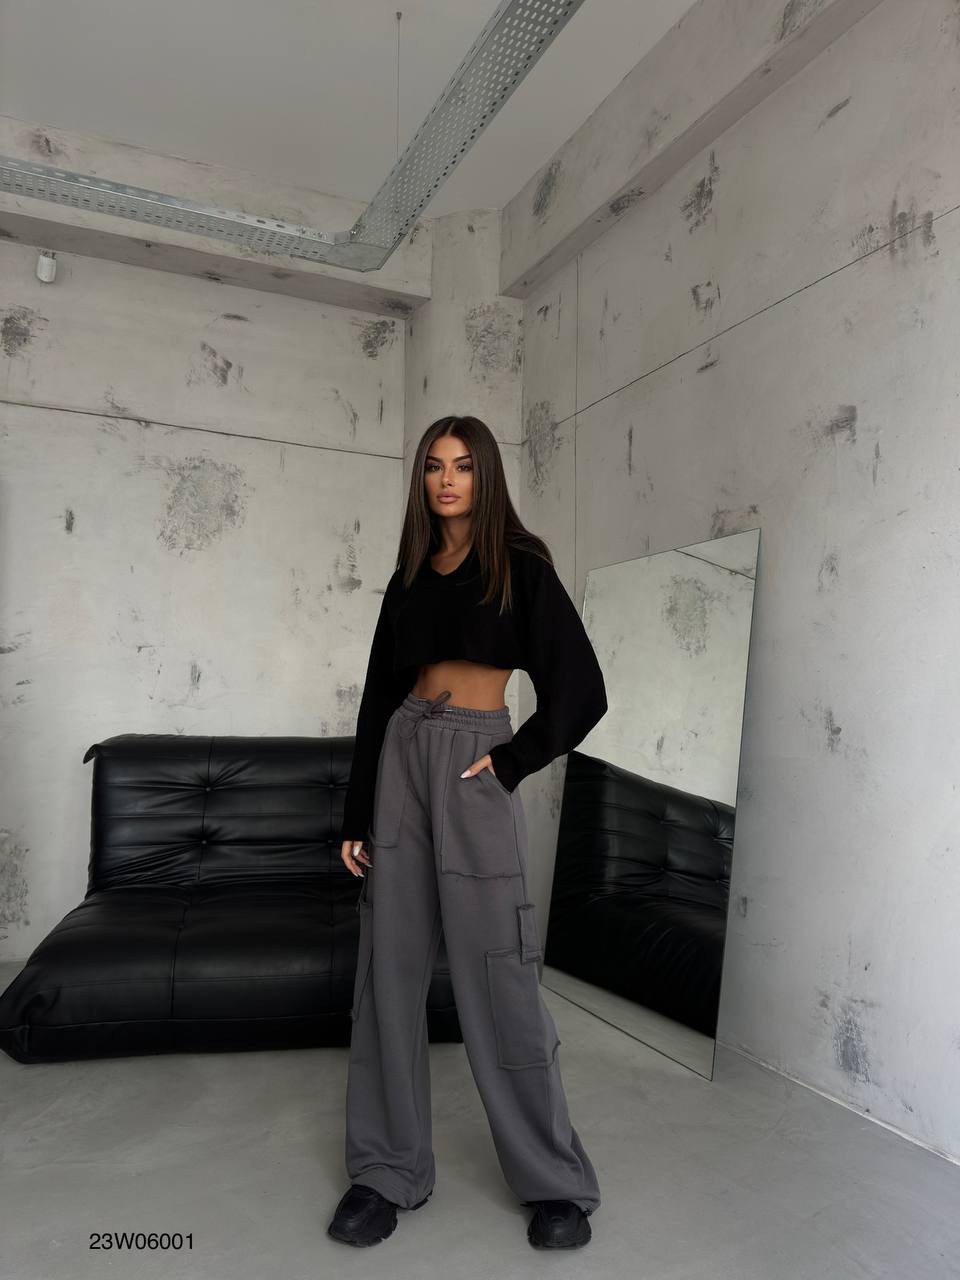 Дамски карго панталон Allti Grey  https://bvseductive.com/products/дамски-карго-панталон-allti-grey  модерен дамски карго панталон в сив цвят модерен дизайн, свободена кройка висока талия,за повече комфорт и стил идеално допълнение към ежедневния Ви гардероб